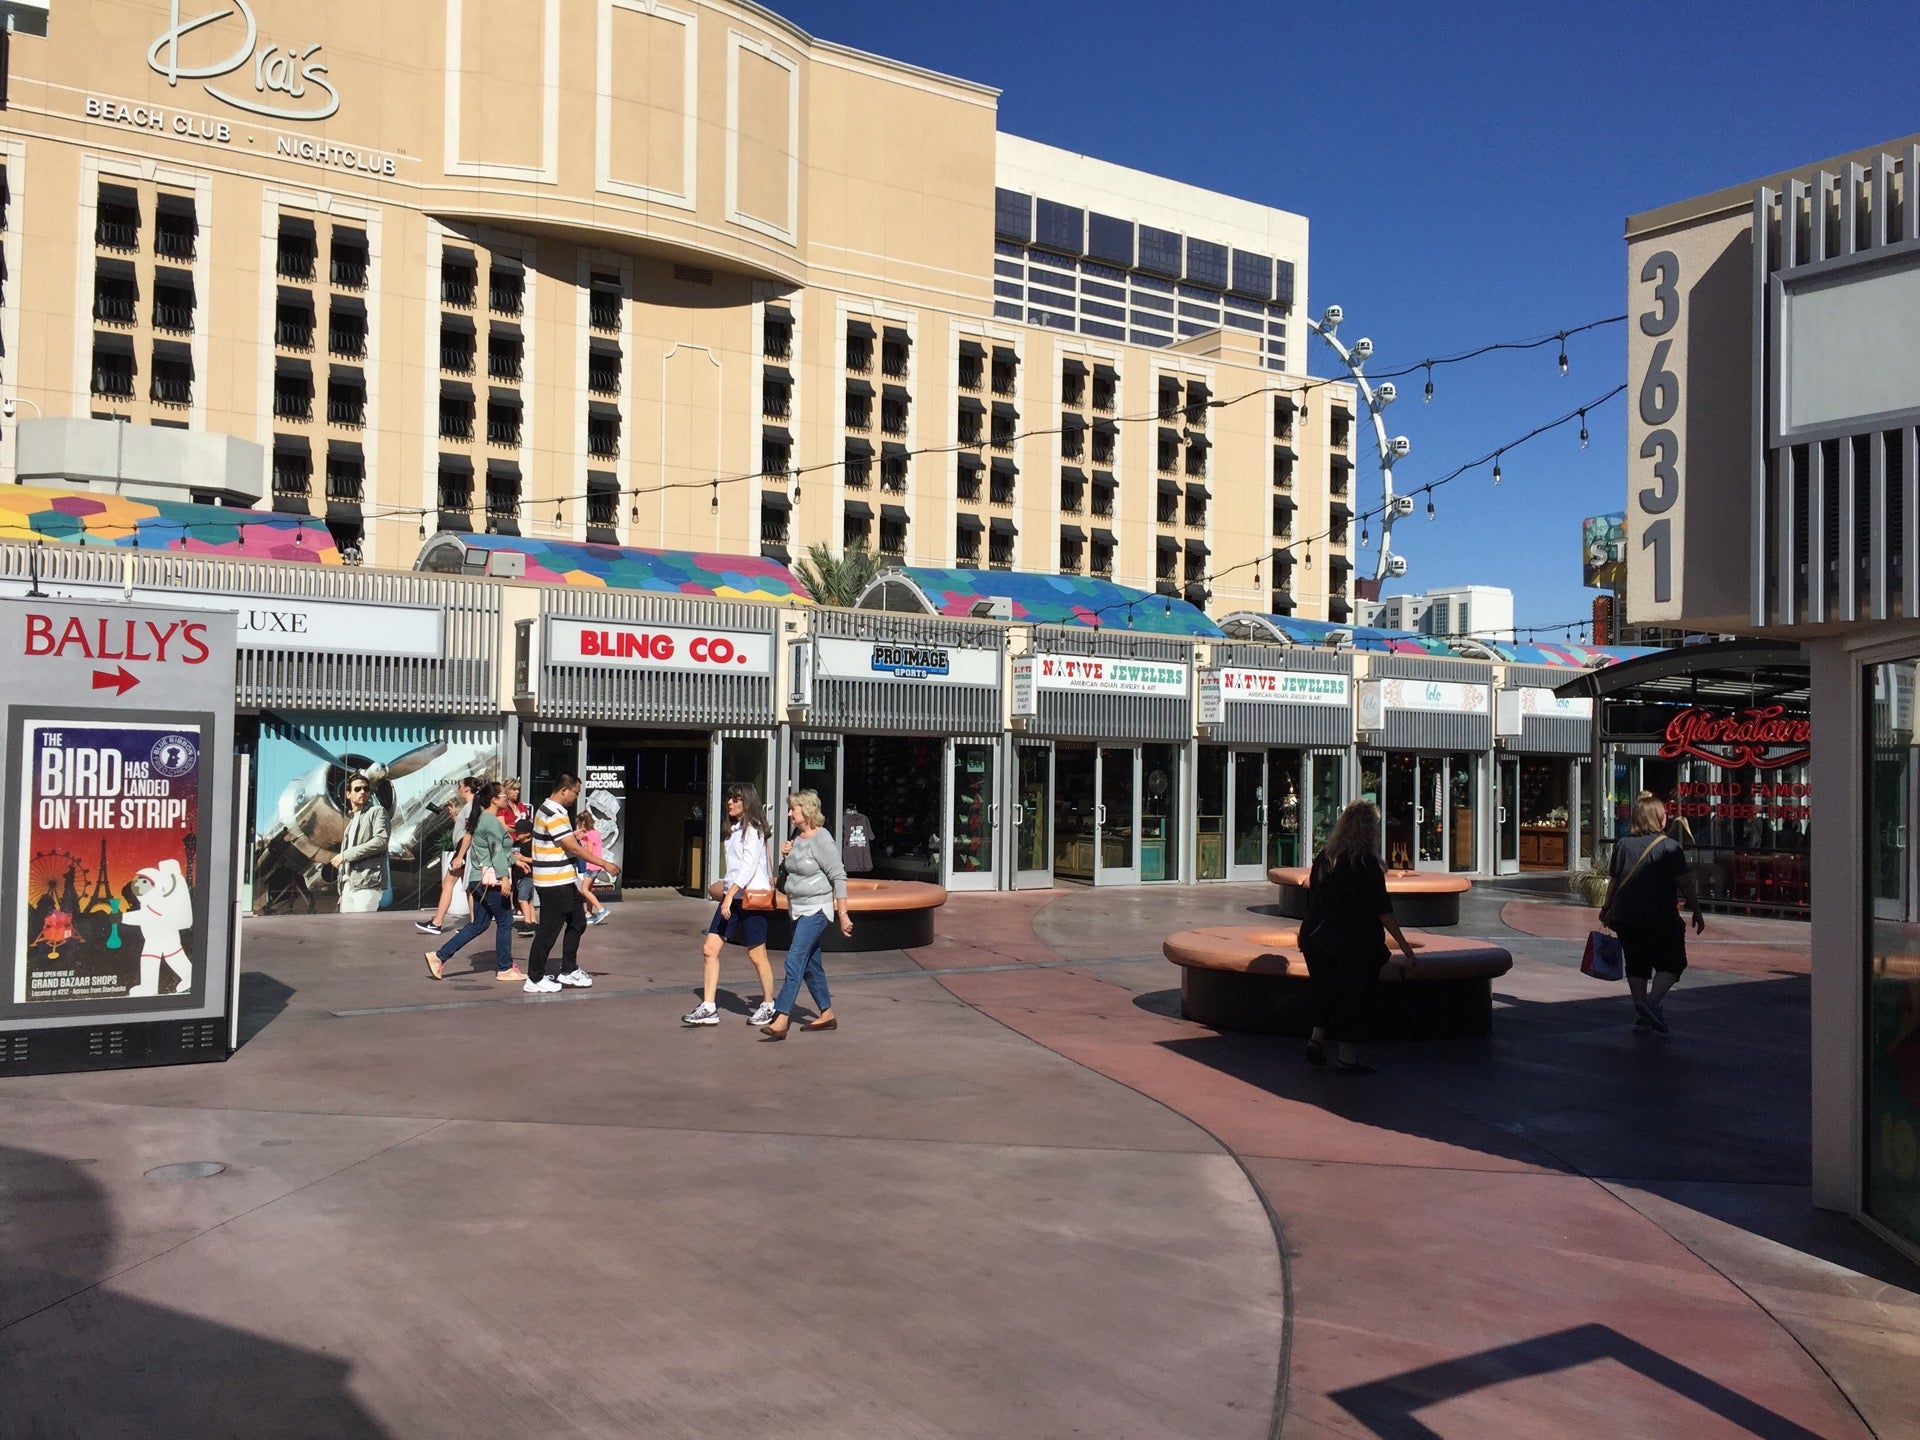 Las Vegas: Grand Bazaar Shops open at Bally's